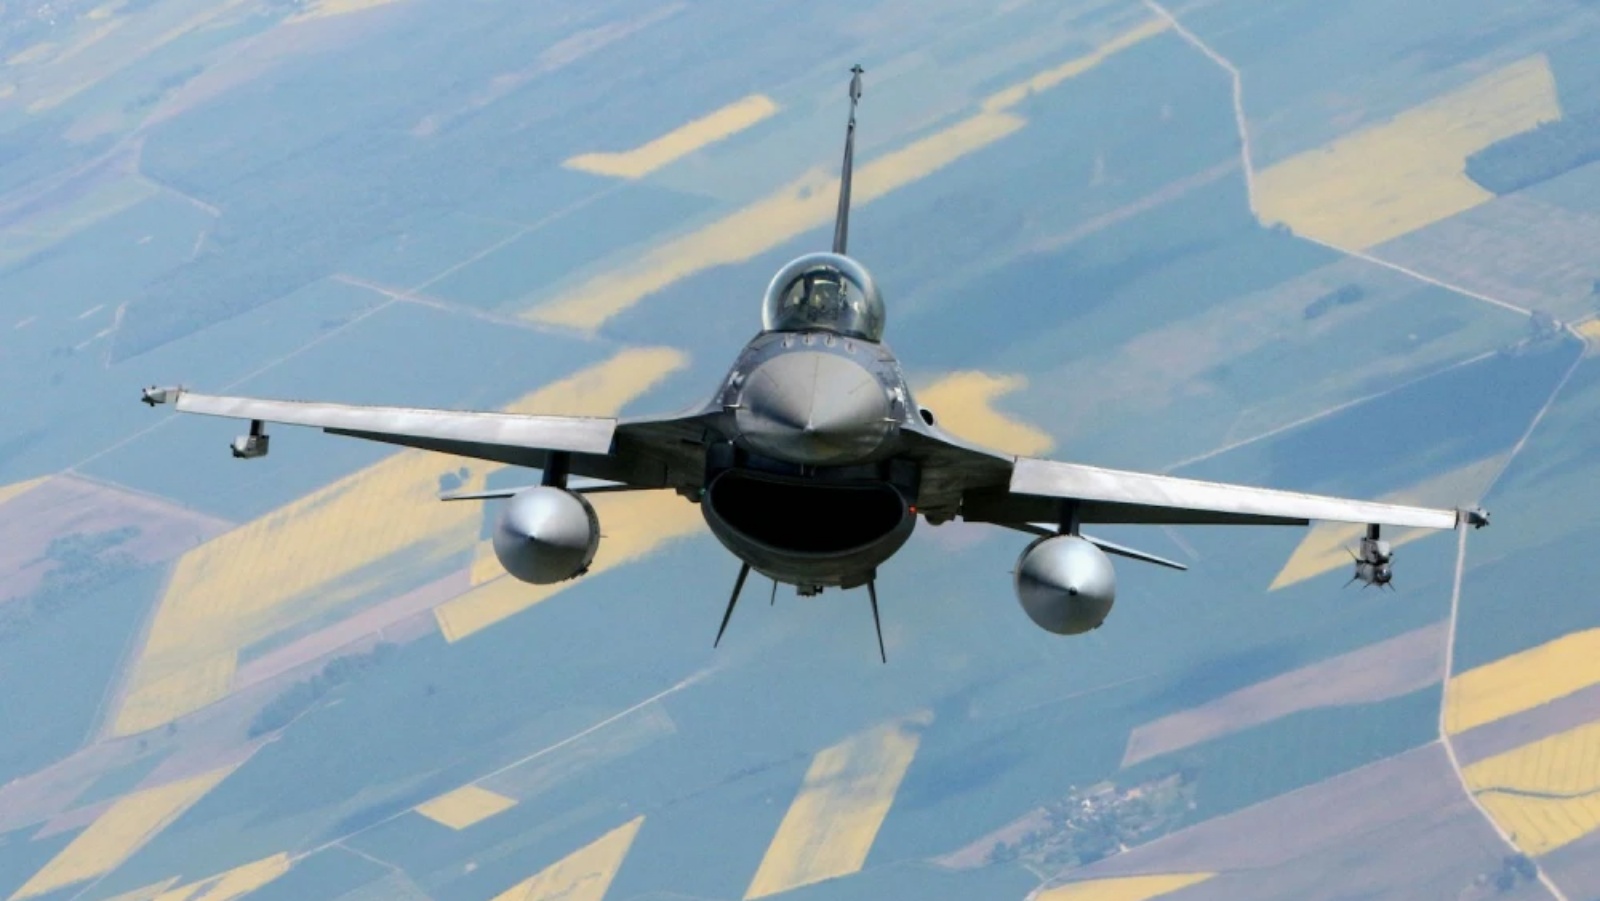 طائرة مقاتلة تابعة للقوات الجوية الرومانية من طراز F-16 تشارك في مهمة الشرطة الجوية لمنطقة البلطيق التابعة لحلف شمال الأطلسي في المجال الجوي الليتواني بالقرب من سياولياي في 23 مايو